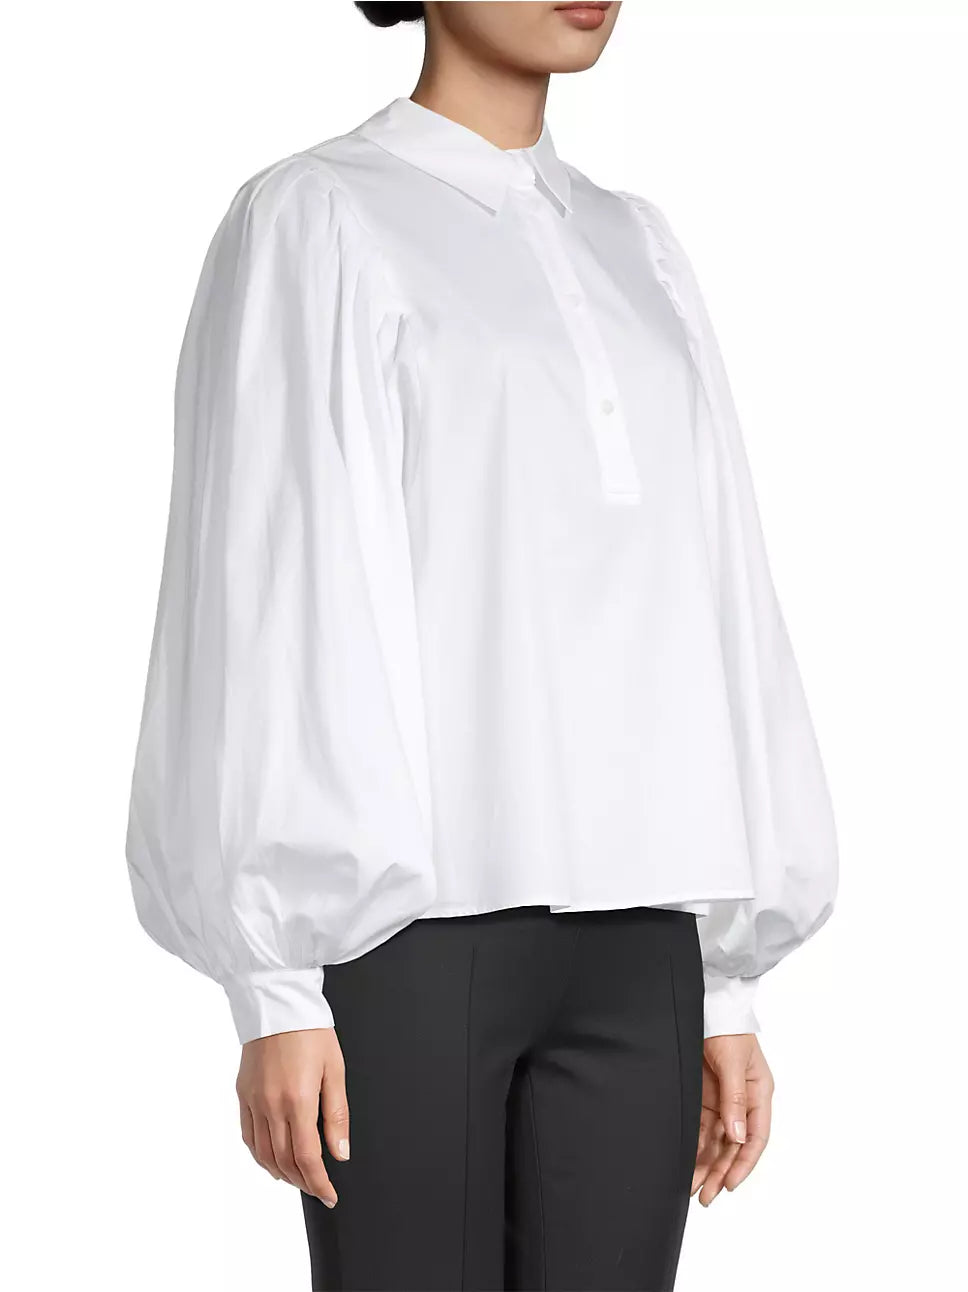 Harshman Lois Popover Shirt - White